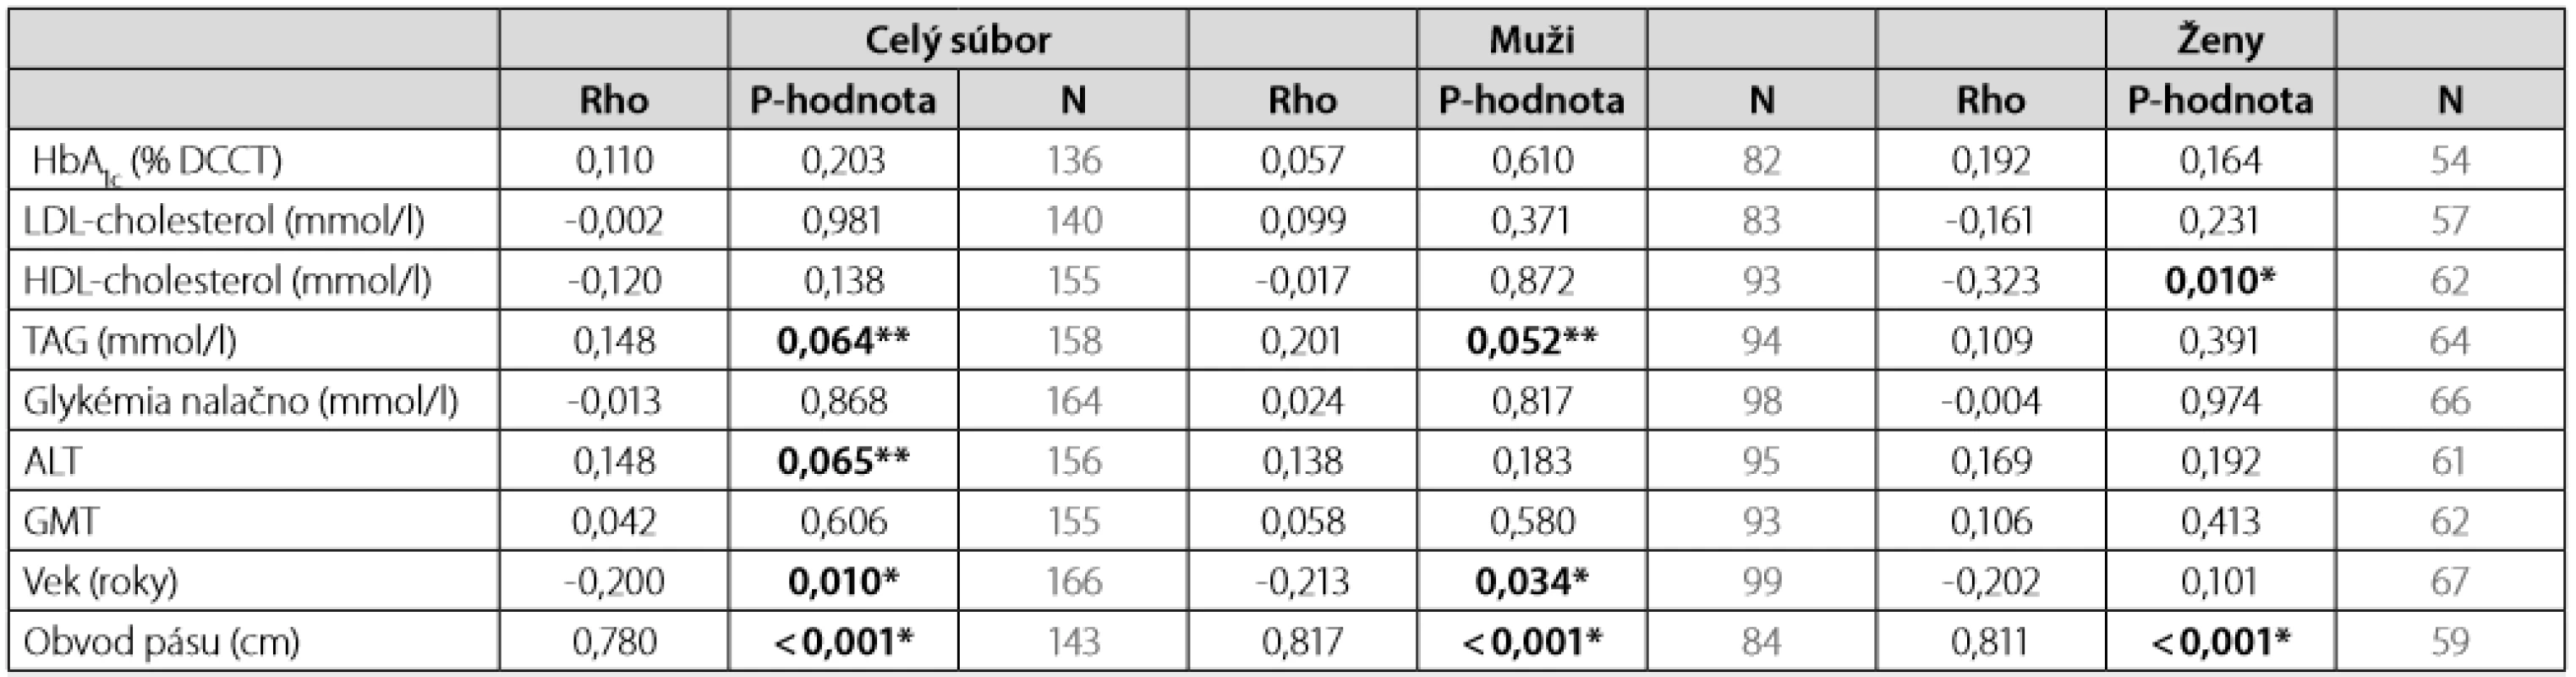 Spearmanov korelačný koeficient rho medzi BMI (kg/m2) a sledovanými parametrami